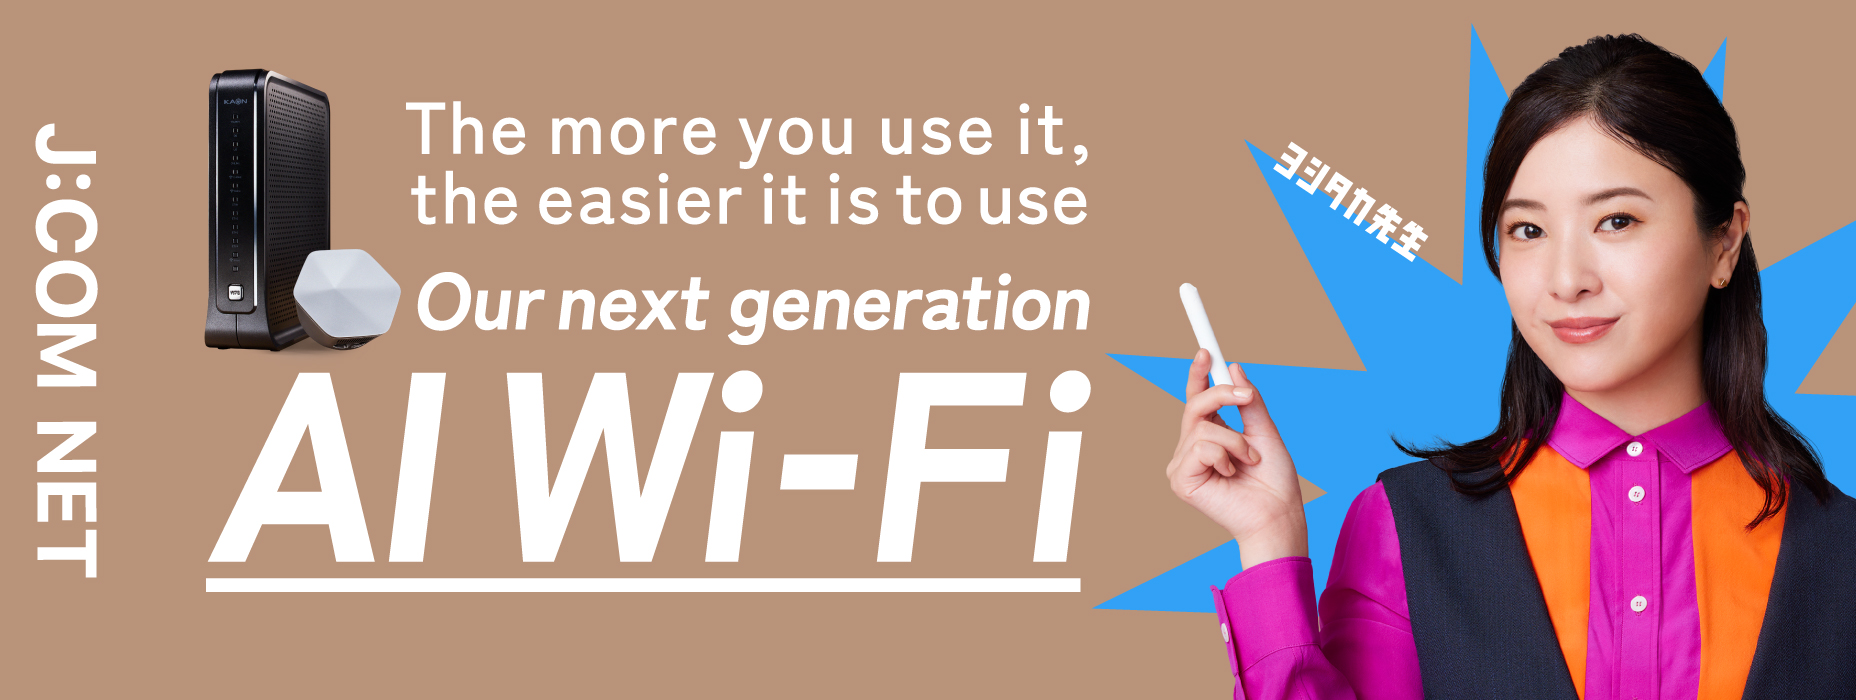 Wi-Fi AI a próxima geração, que quanto mais utiliza, traz mais conforto